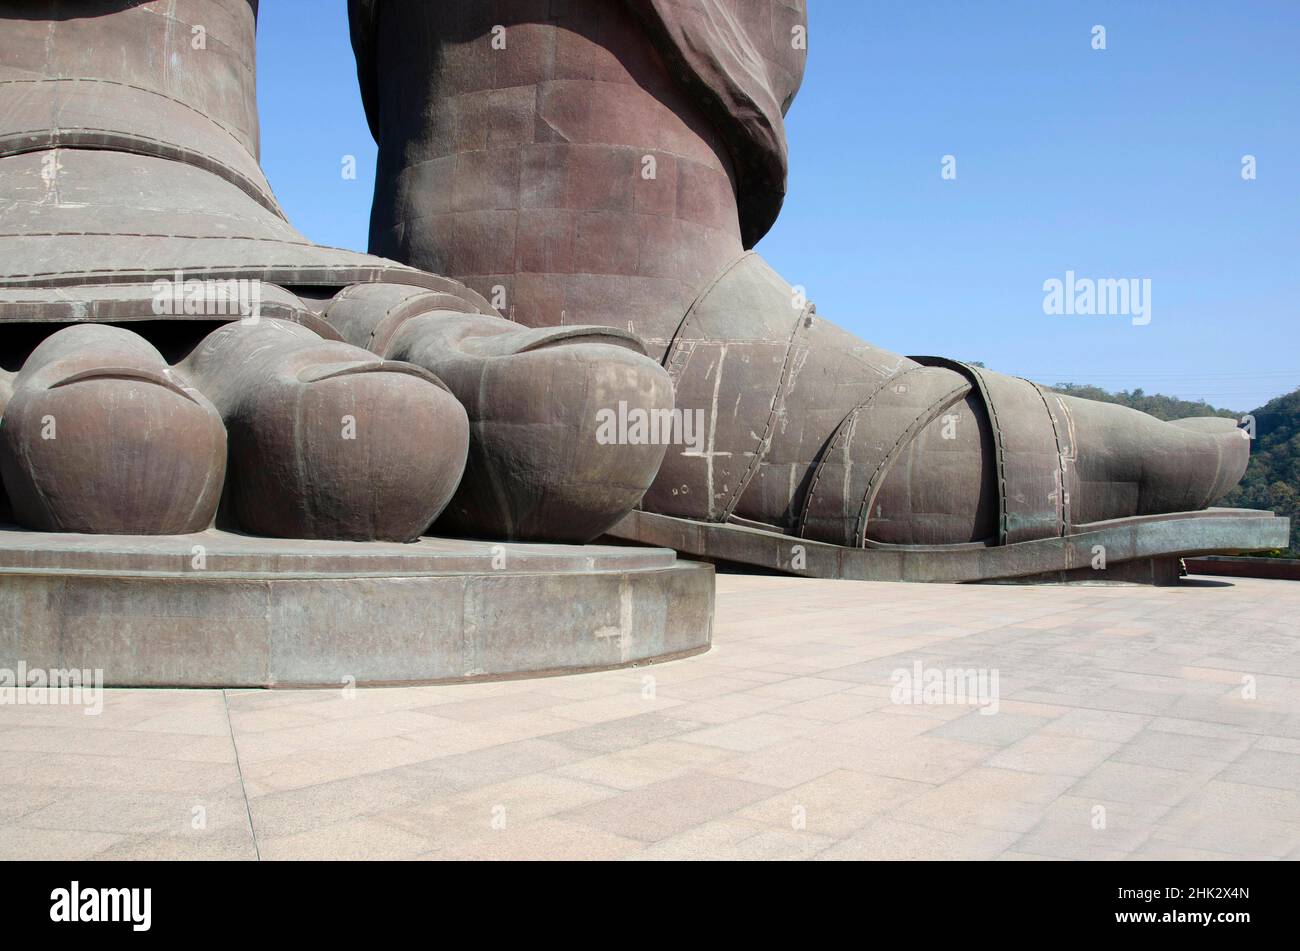 Primer plano del pie de la Estatua de Unidad de Vallabhbhai Patel. La estatua más alta del mundo a 182 metros (597 pies) de altura. Colonia Kevadiya, Gujarat, India Foto de stock